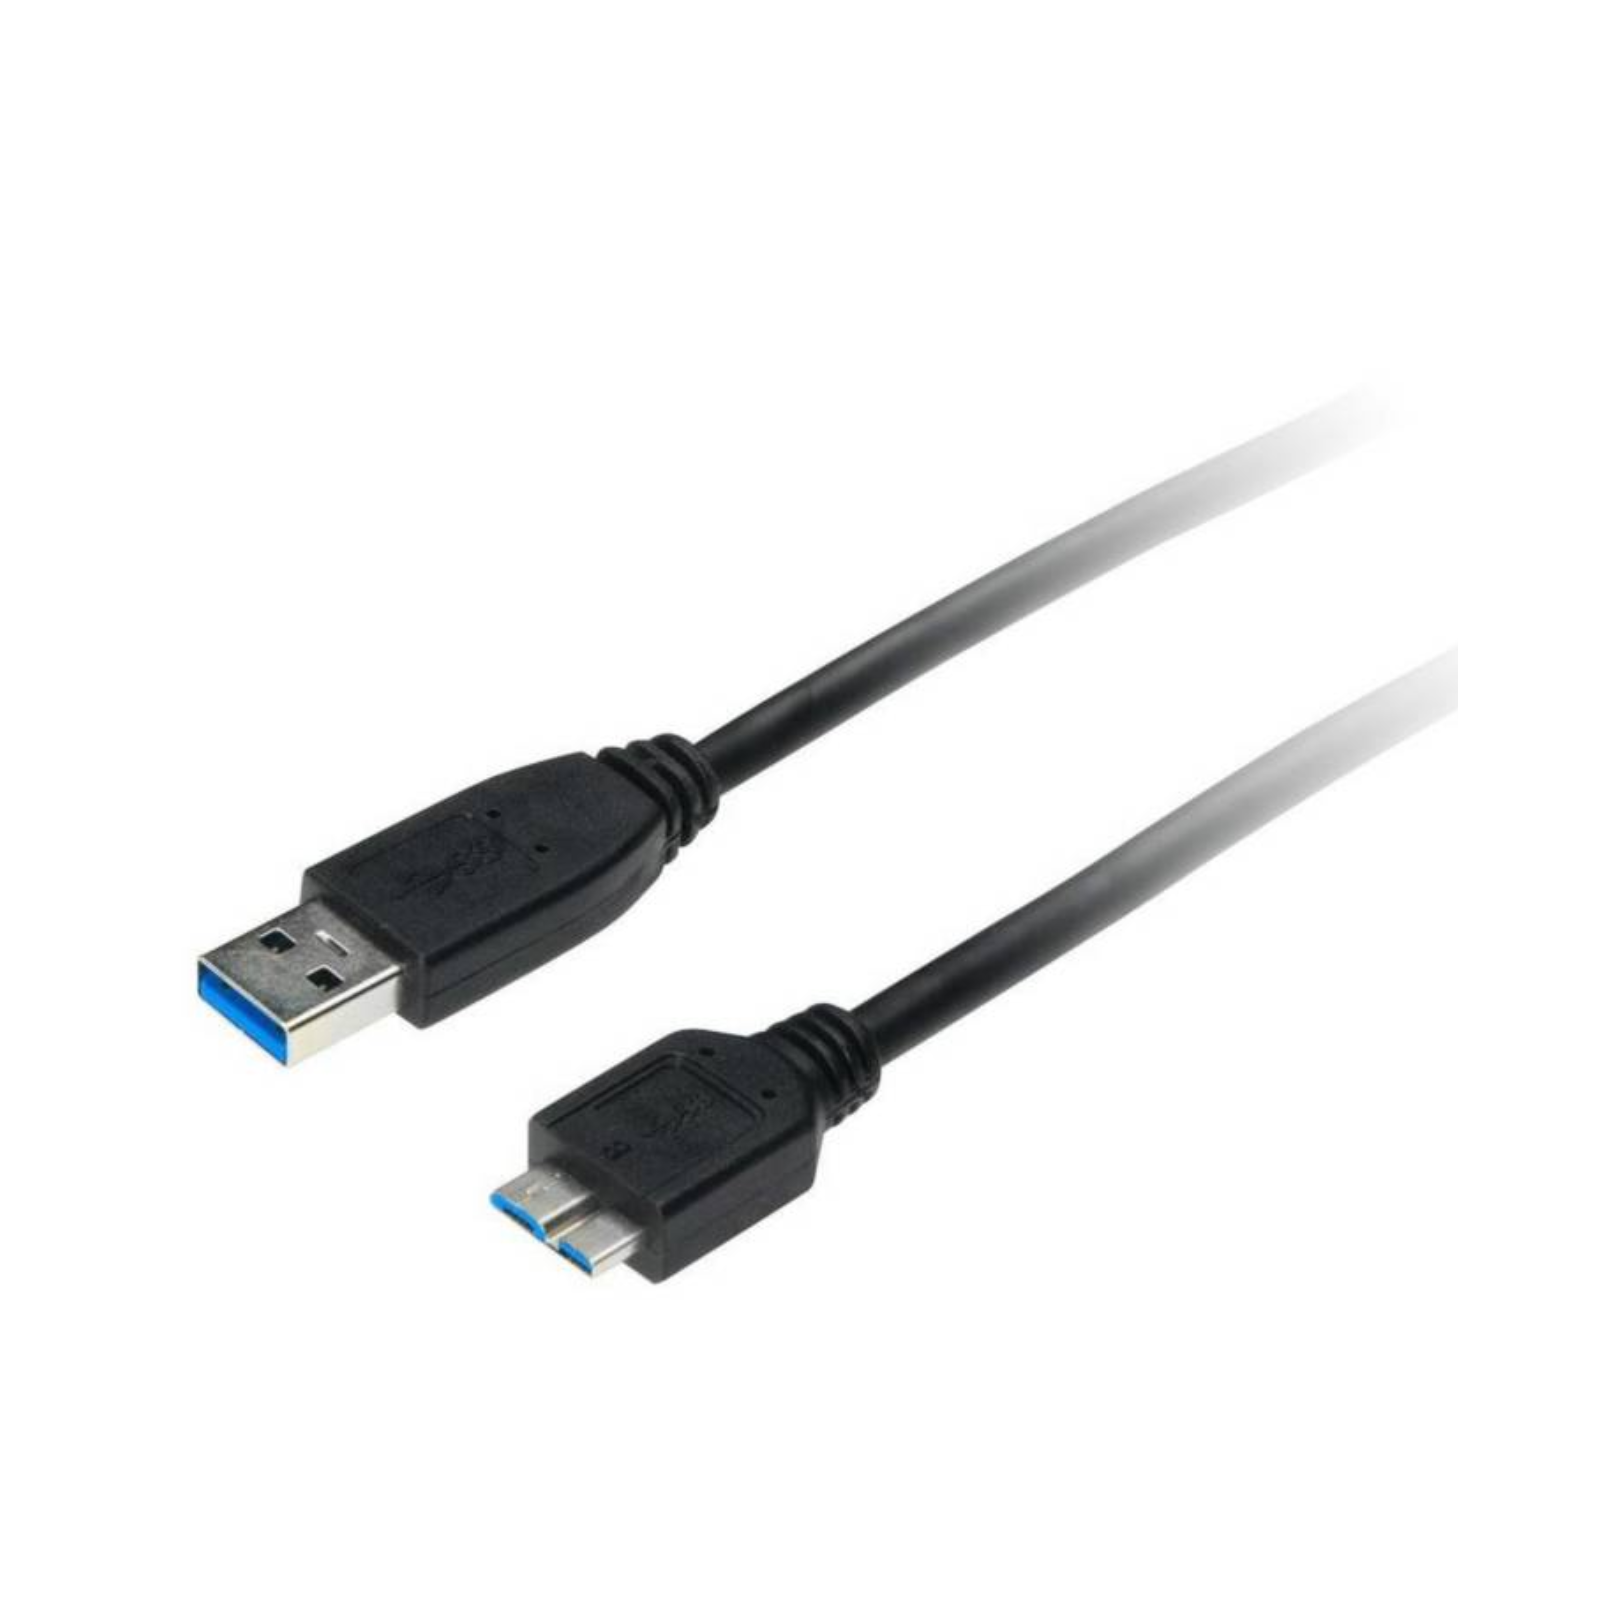 Cable Xtech XTC-365 Micro USB 3.0 A-Macho a Micro B-Macho Para disco Duro